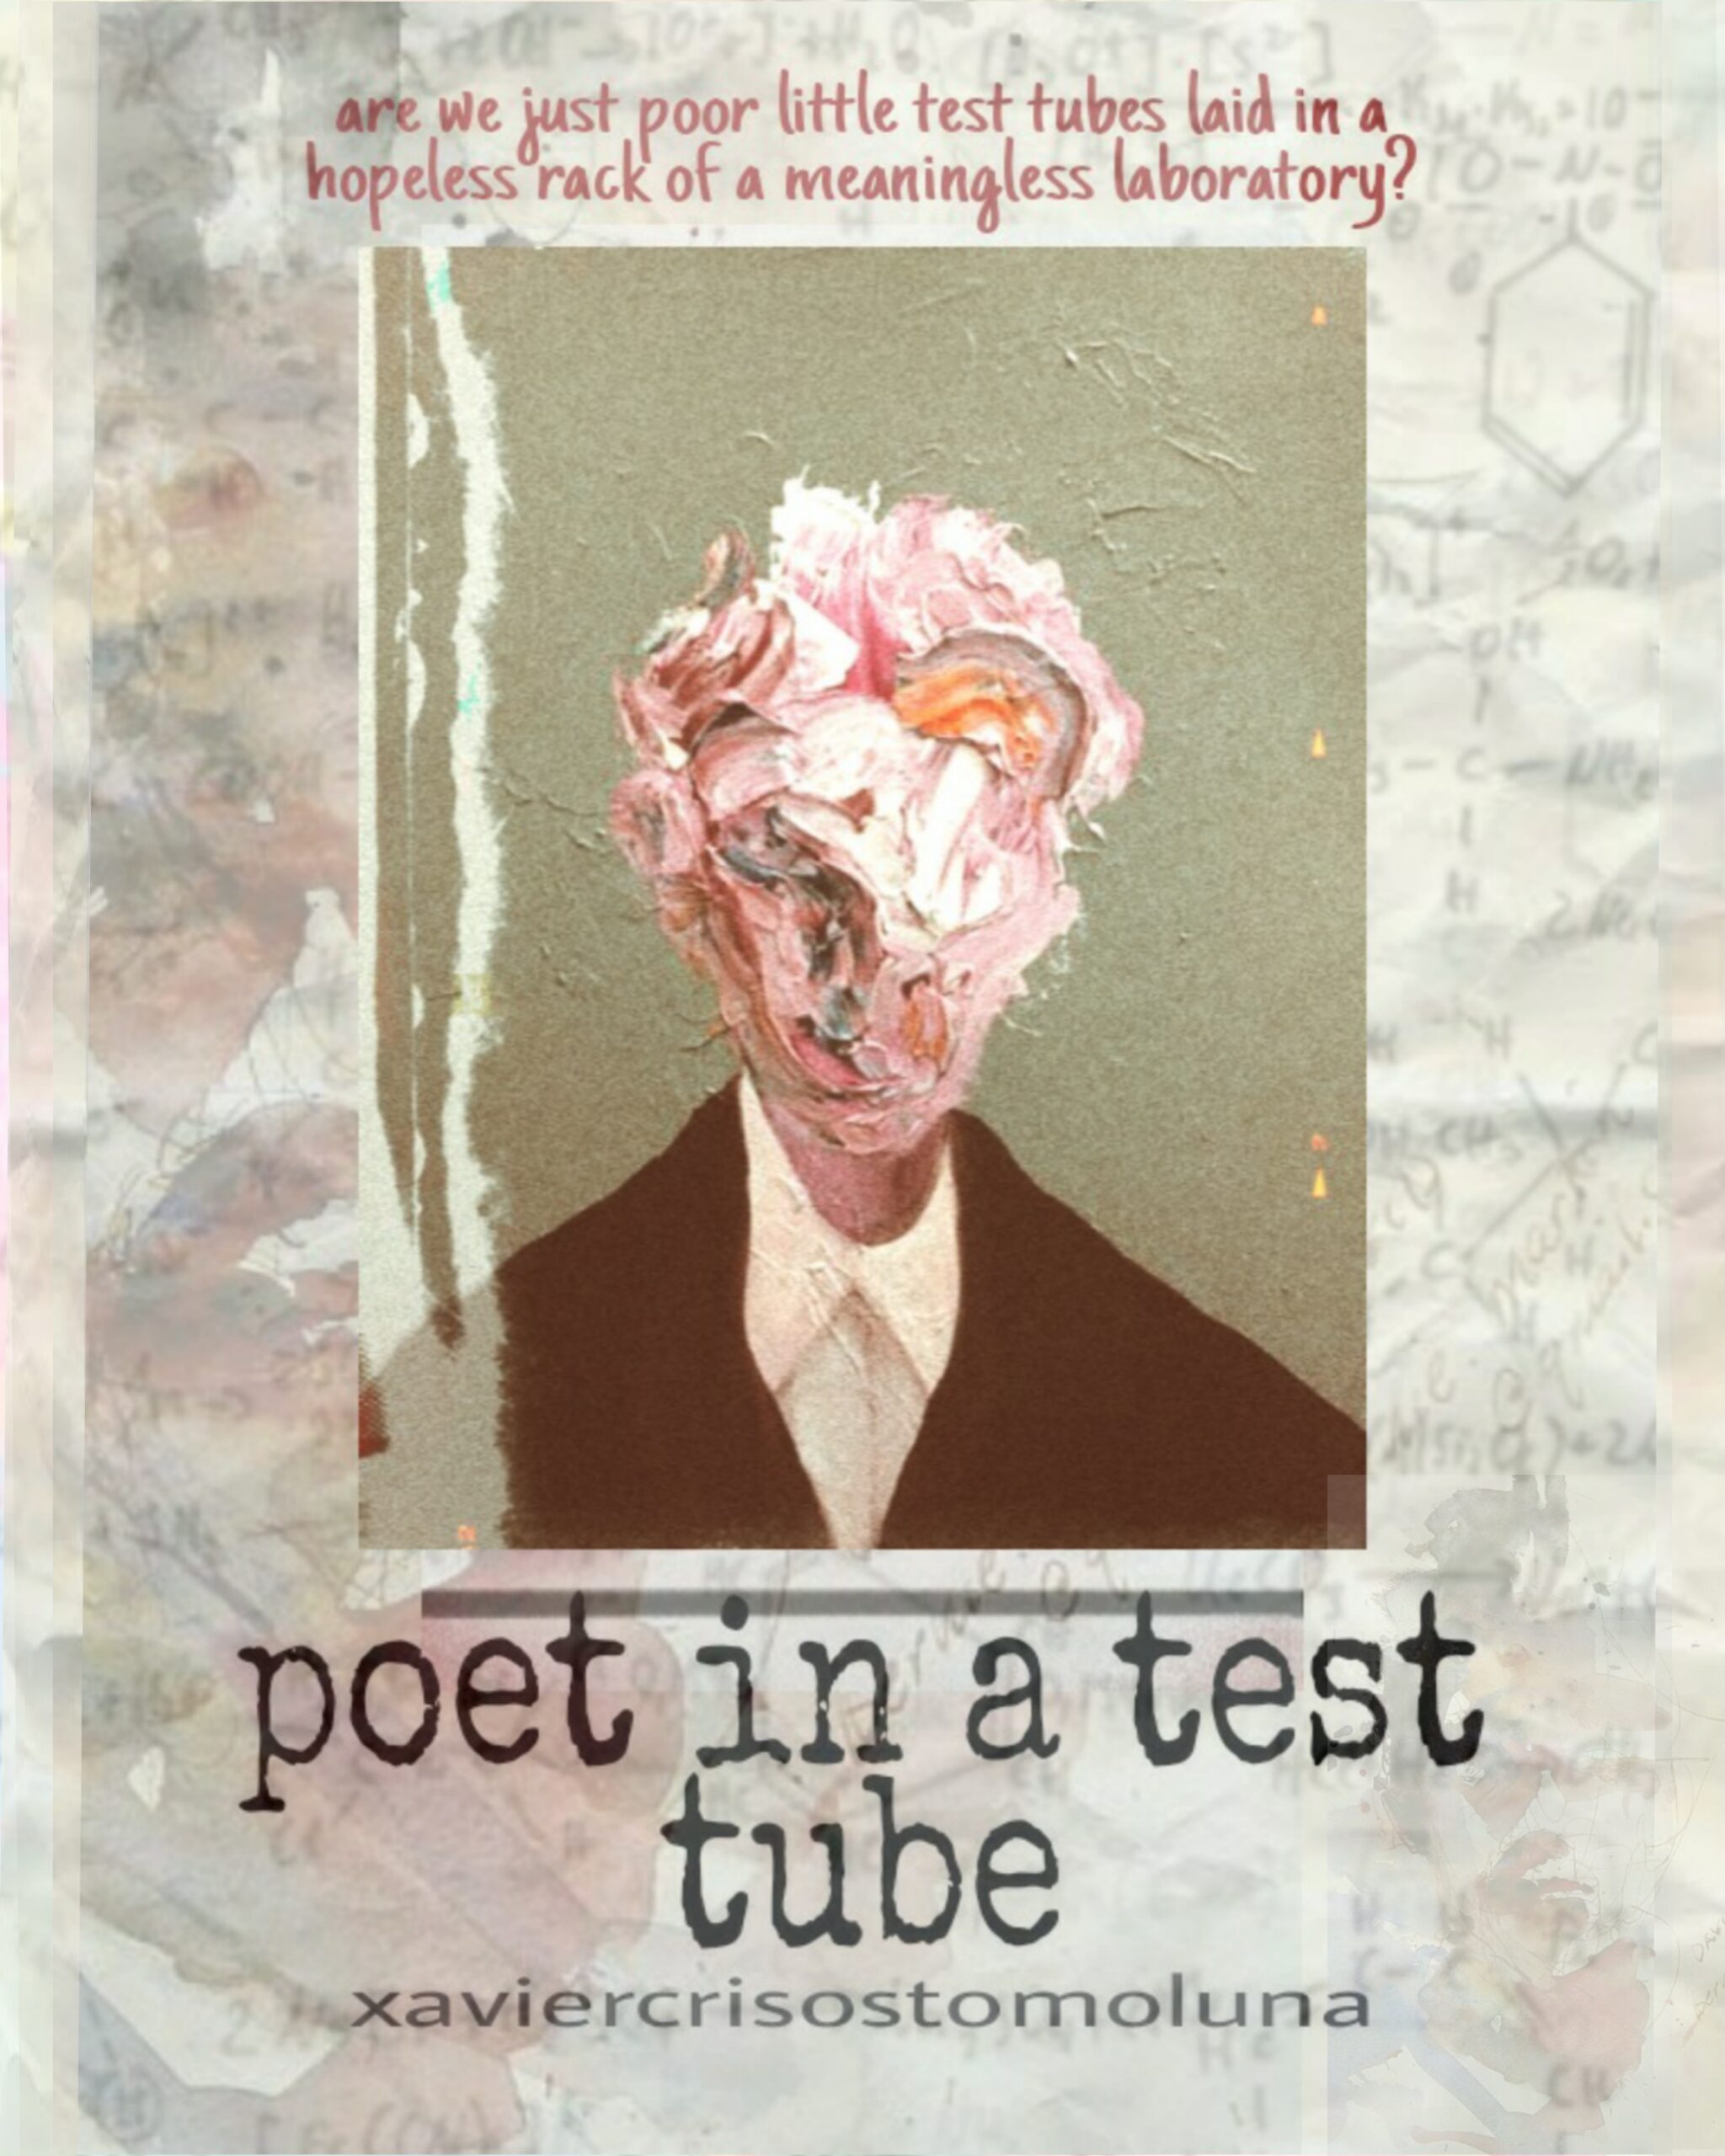 FREE: Poet in a Test Tube by Xavier Crisostomo Luna